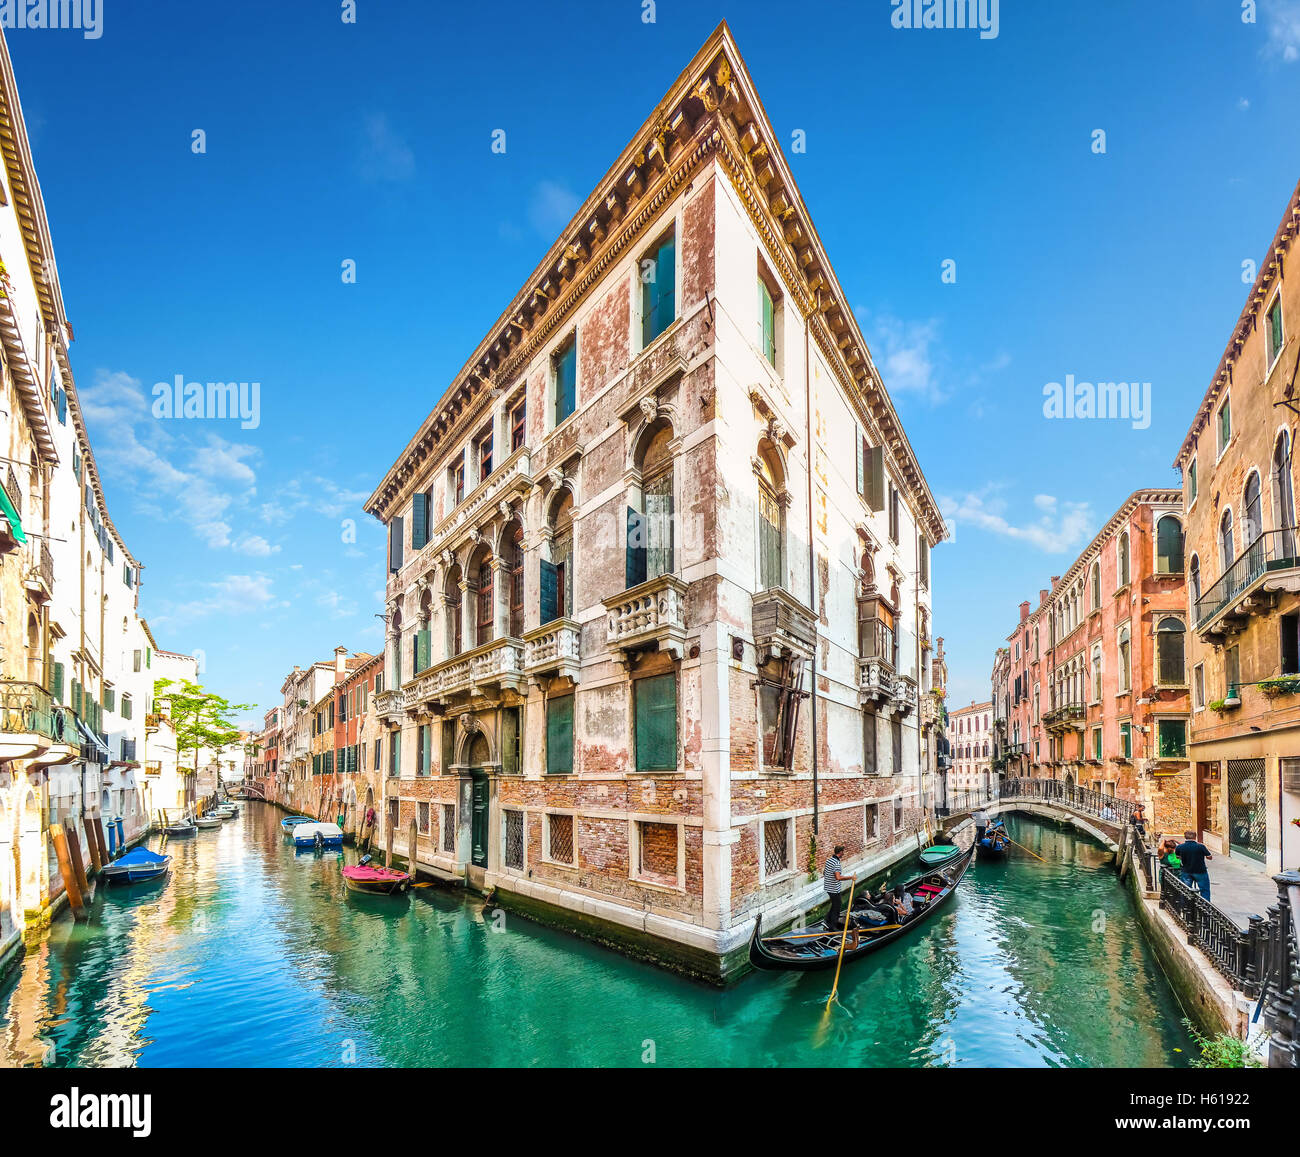 Tipica scena romantica con i tradizionali gondole sui canali tra storici edifici veneziani a Venezia, Italia Foto Stock